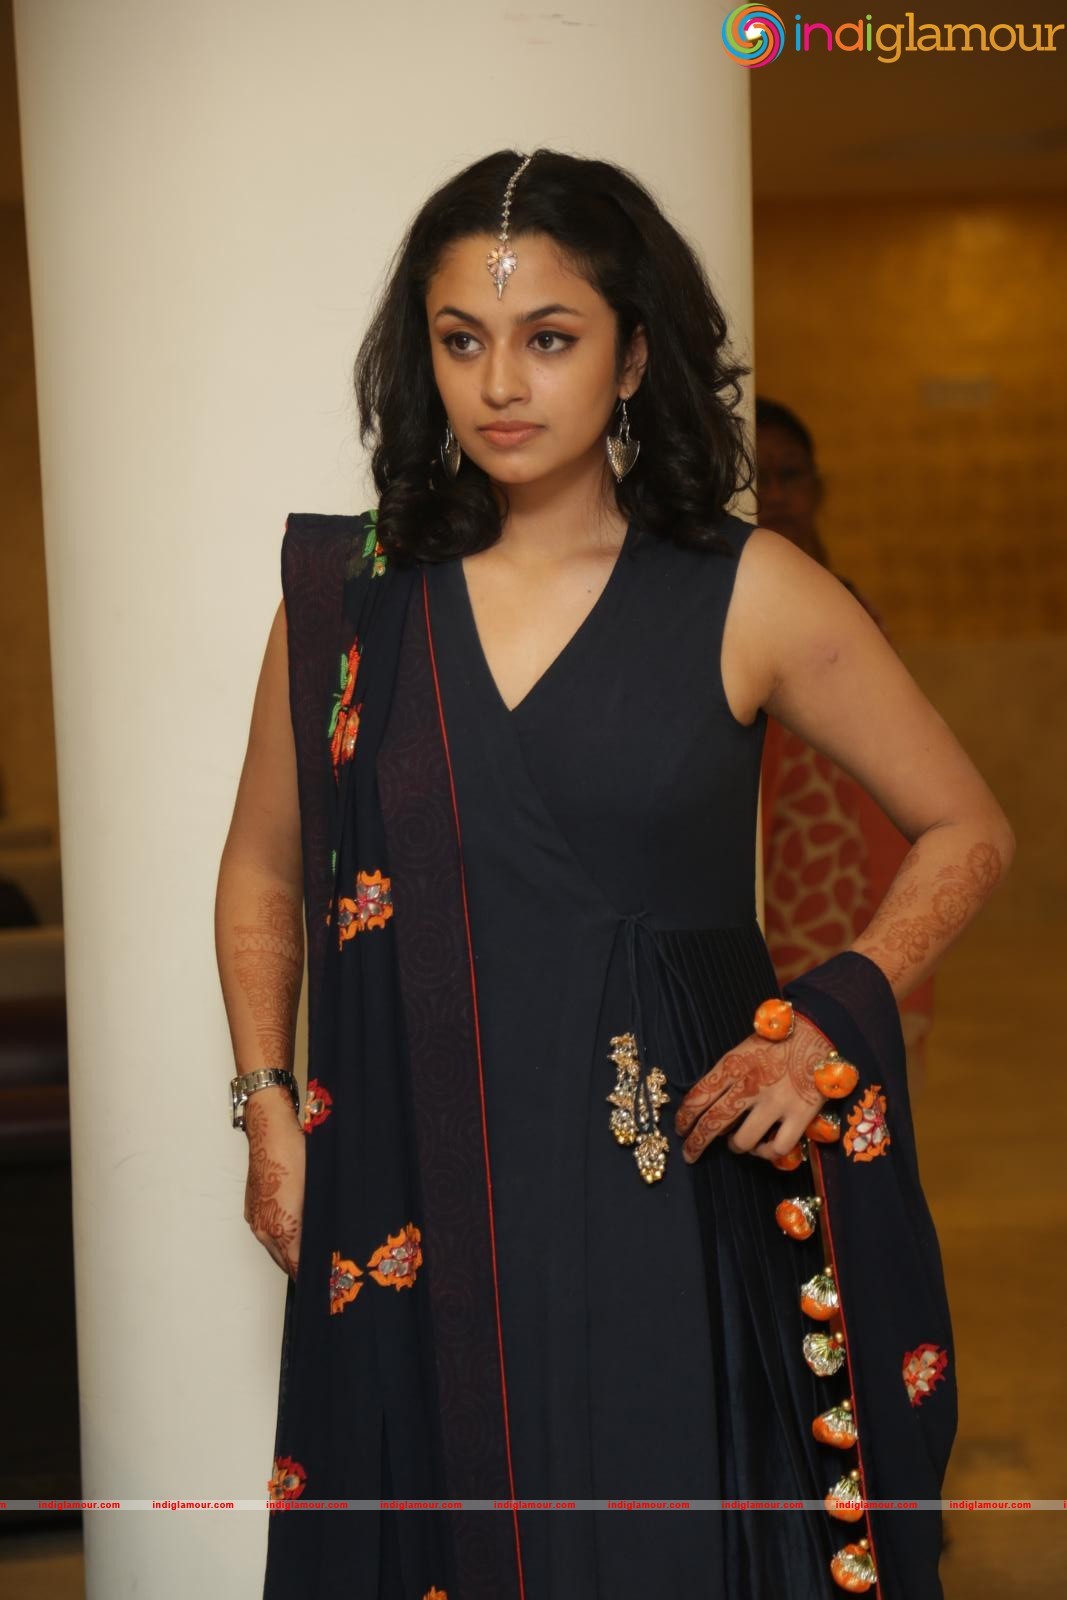 Malavika Nair Actress photo,image,pics and stills - # 346132